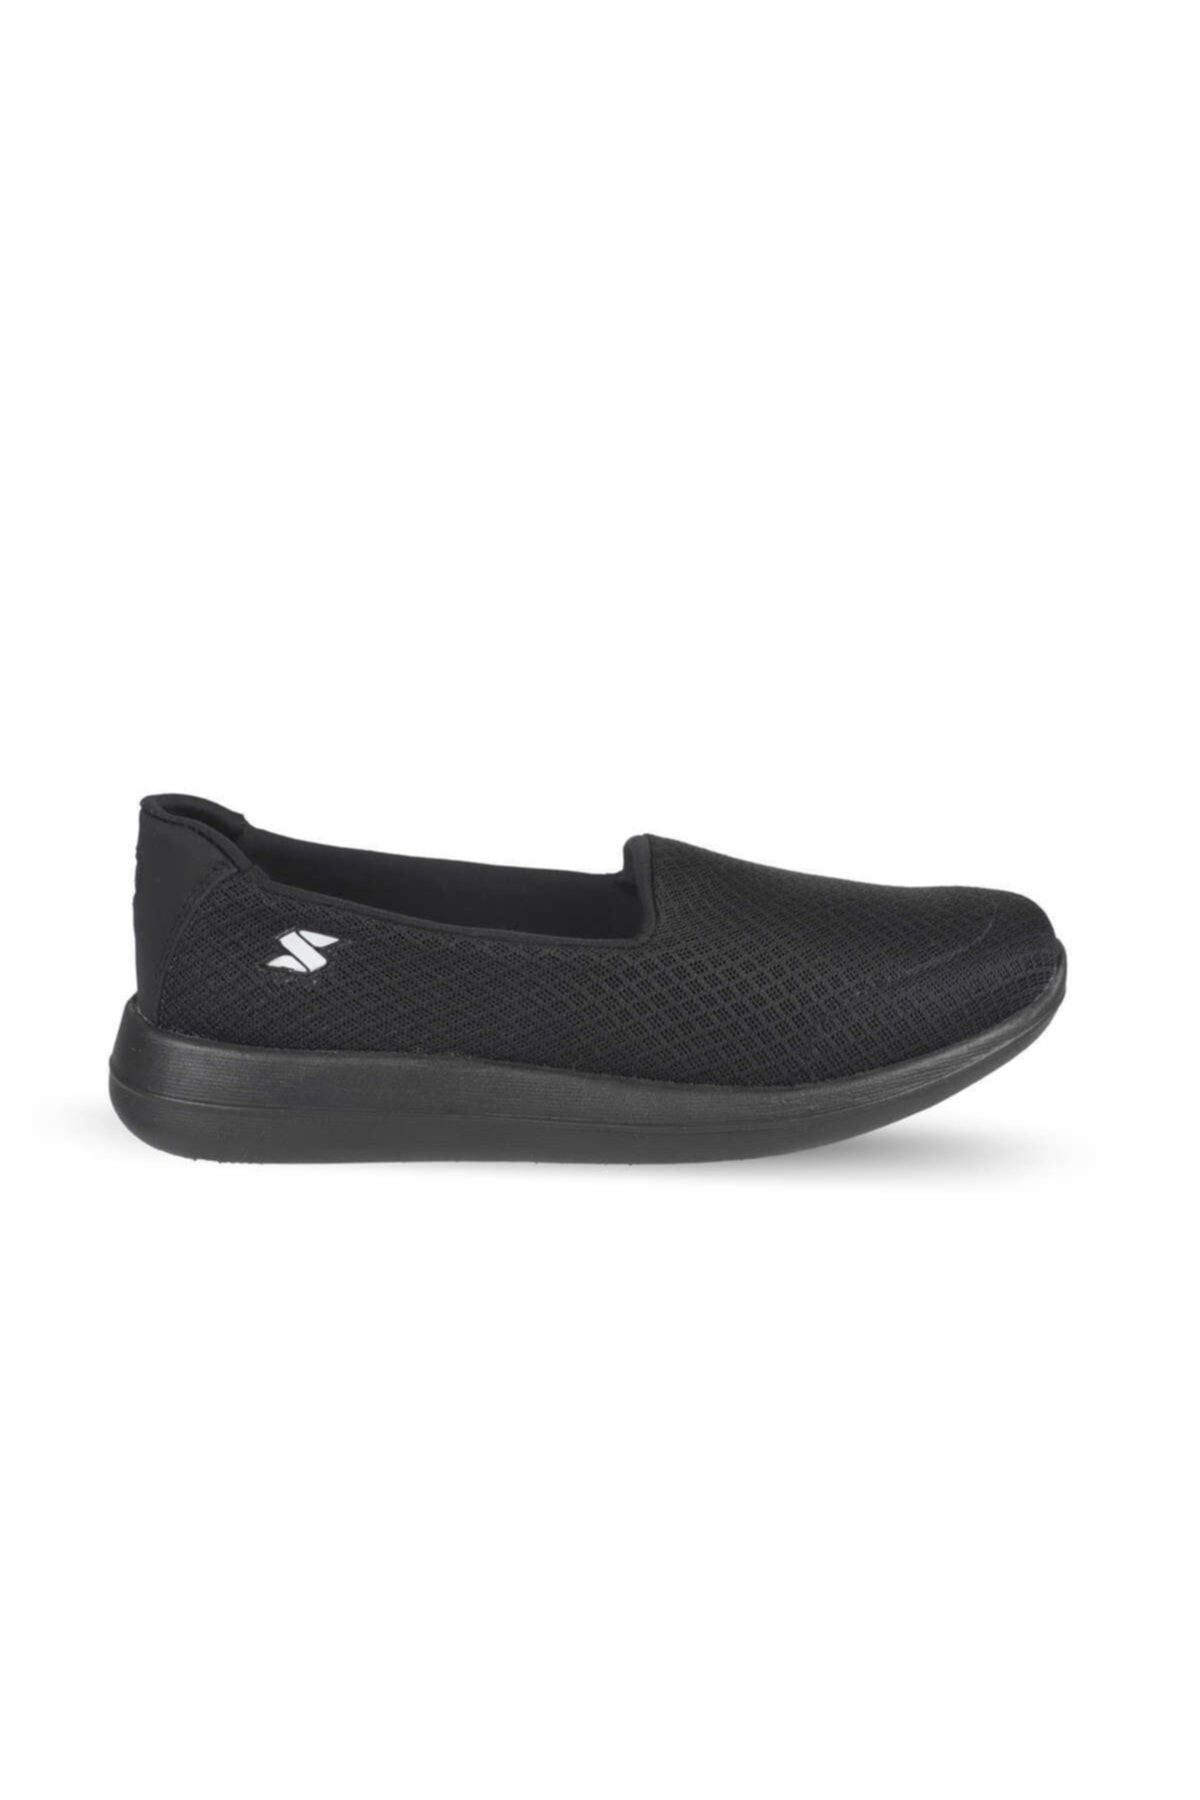 Scooter Siyah Kadın Sneaker Ayakkabı Z7040ts 39